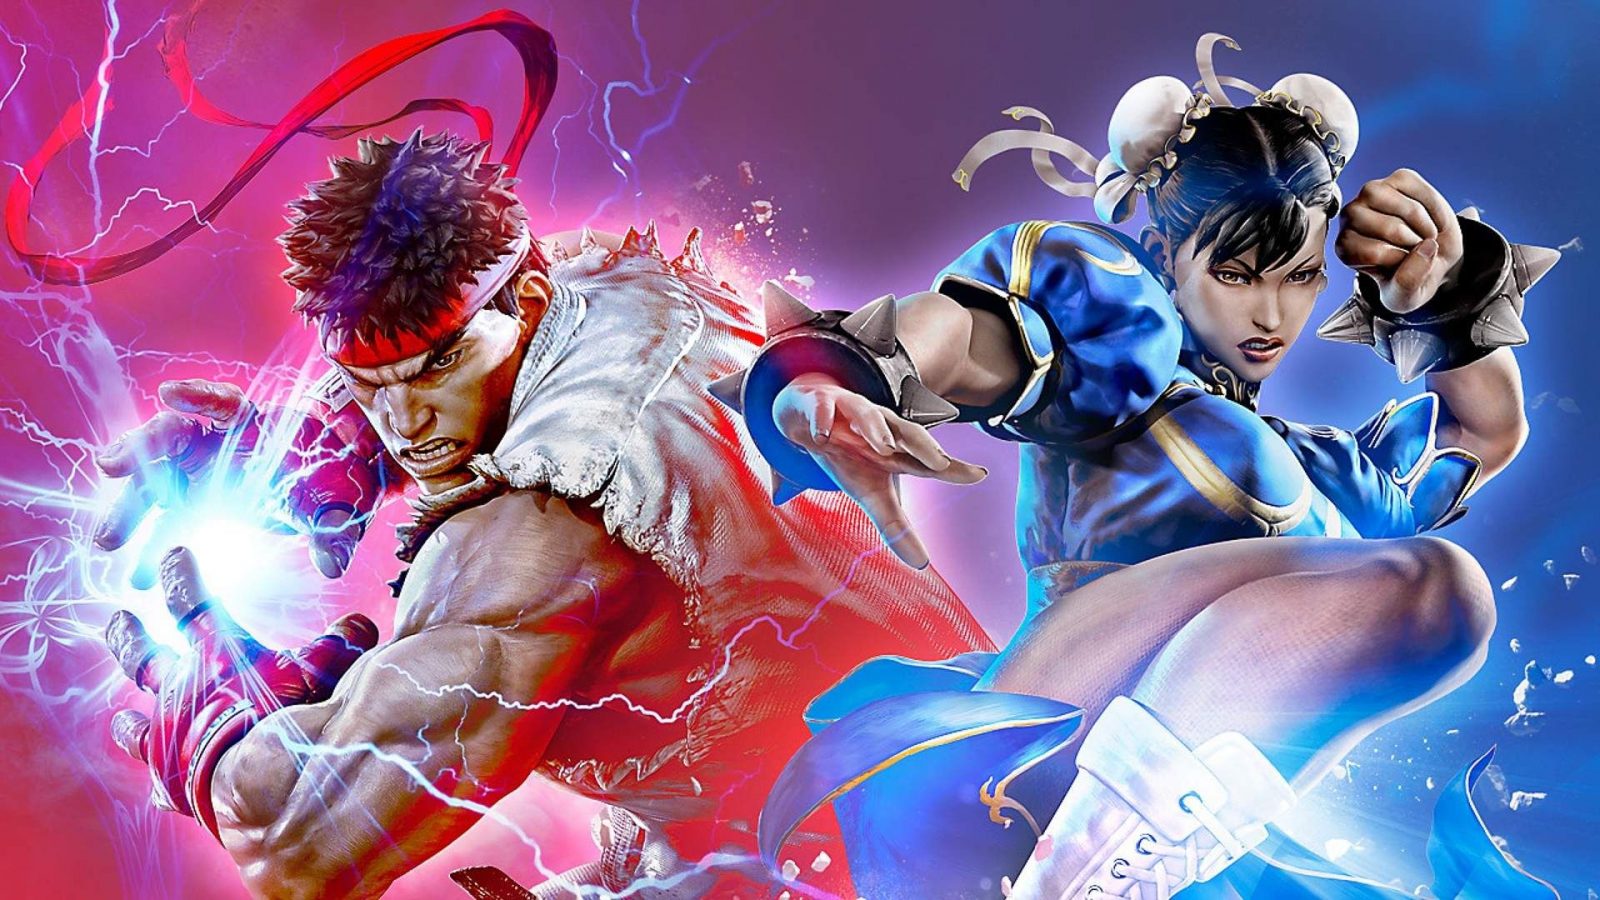 Opere d'arte di Street Fighter 6 con Ryu e Chun-li